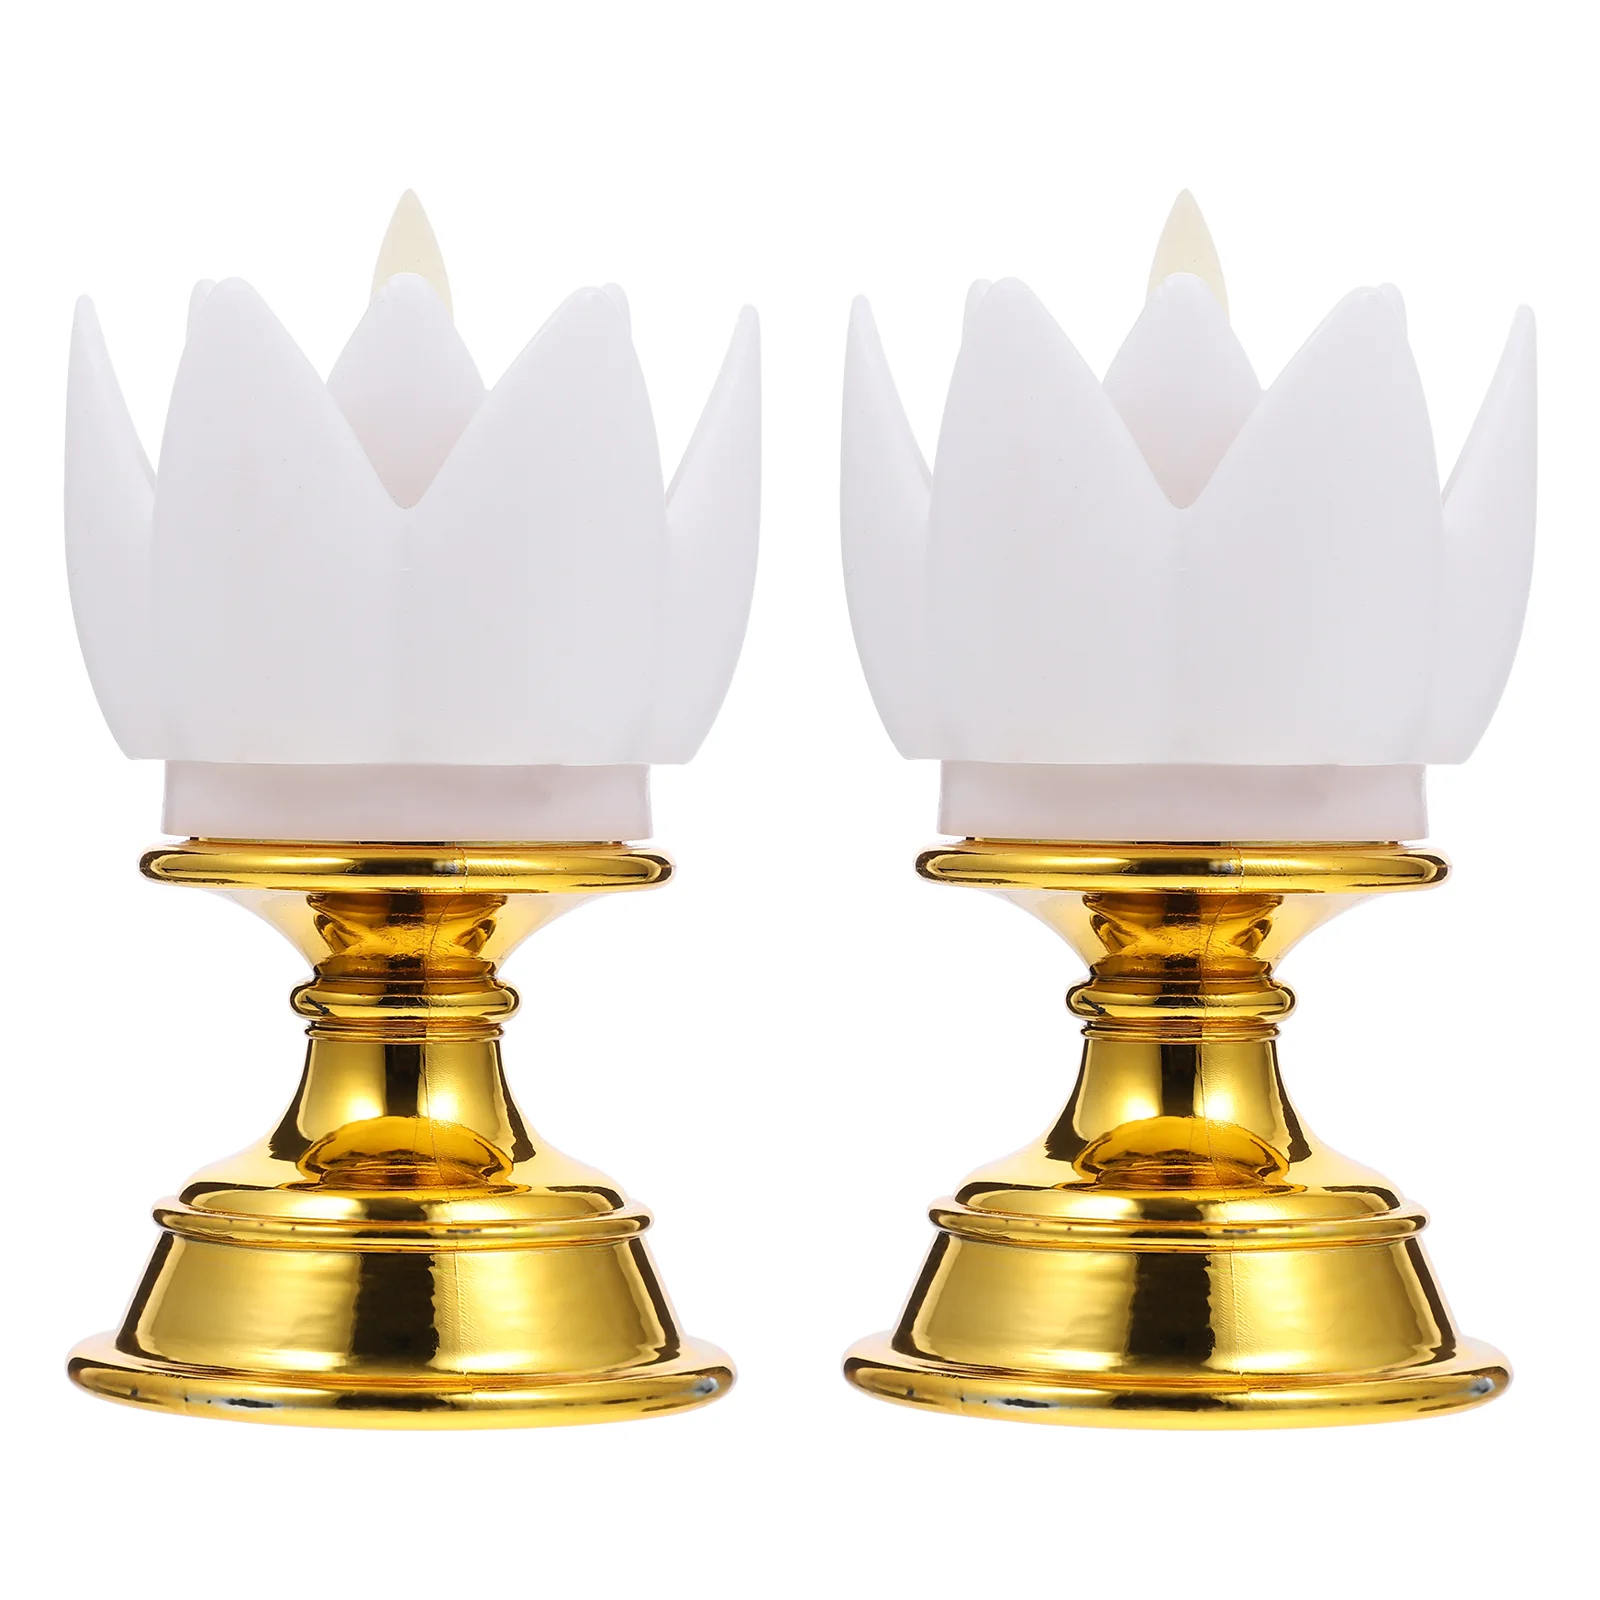 

Керосиновый Фонарь в винтажном стиле, Буддийские принадлежности для алтаря, керосиновая лампа в стиле ретро, масляная лампа Diya, буддийская лампа для поклонения